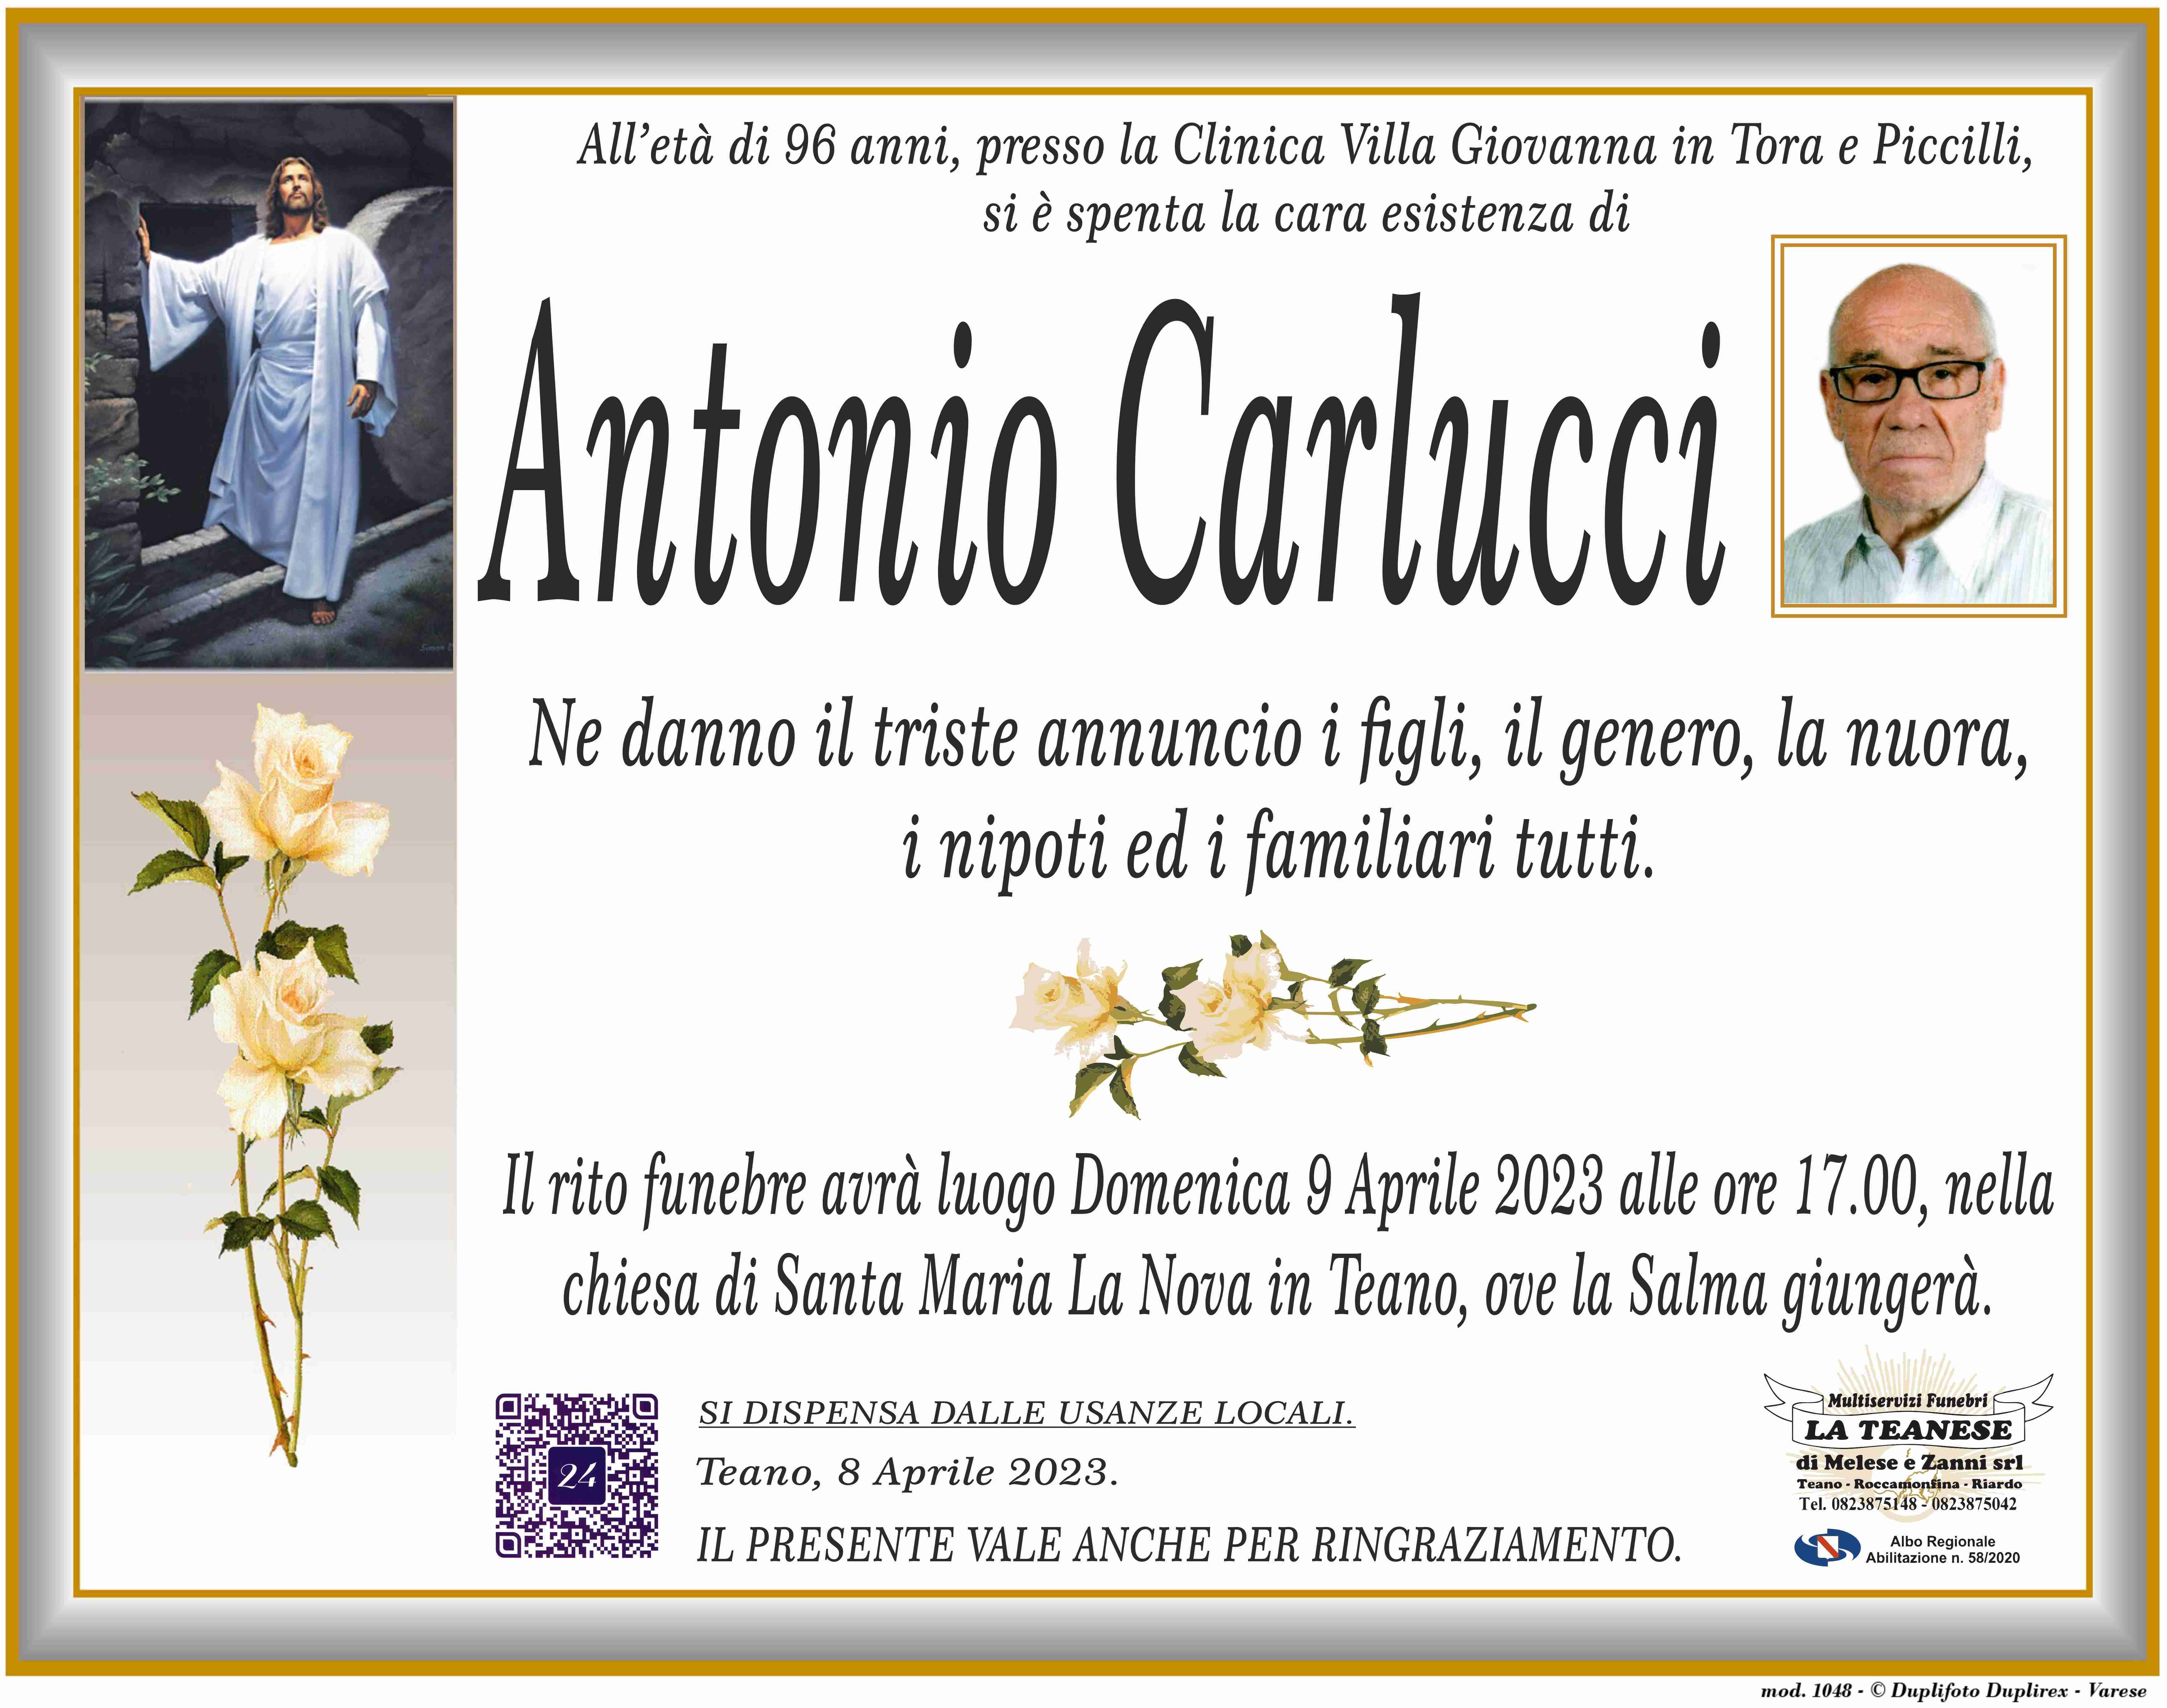 Antonio Carlucci